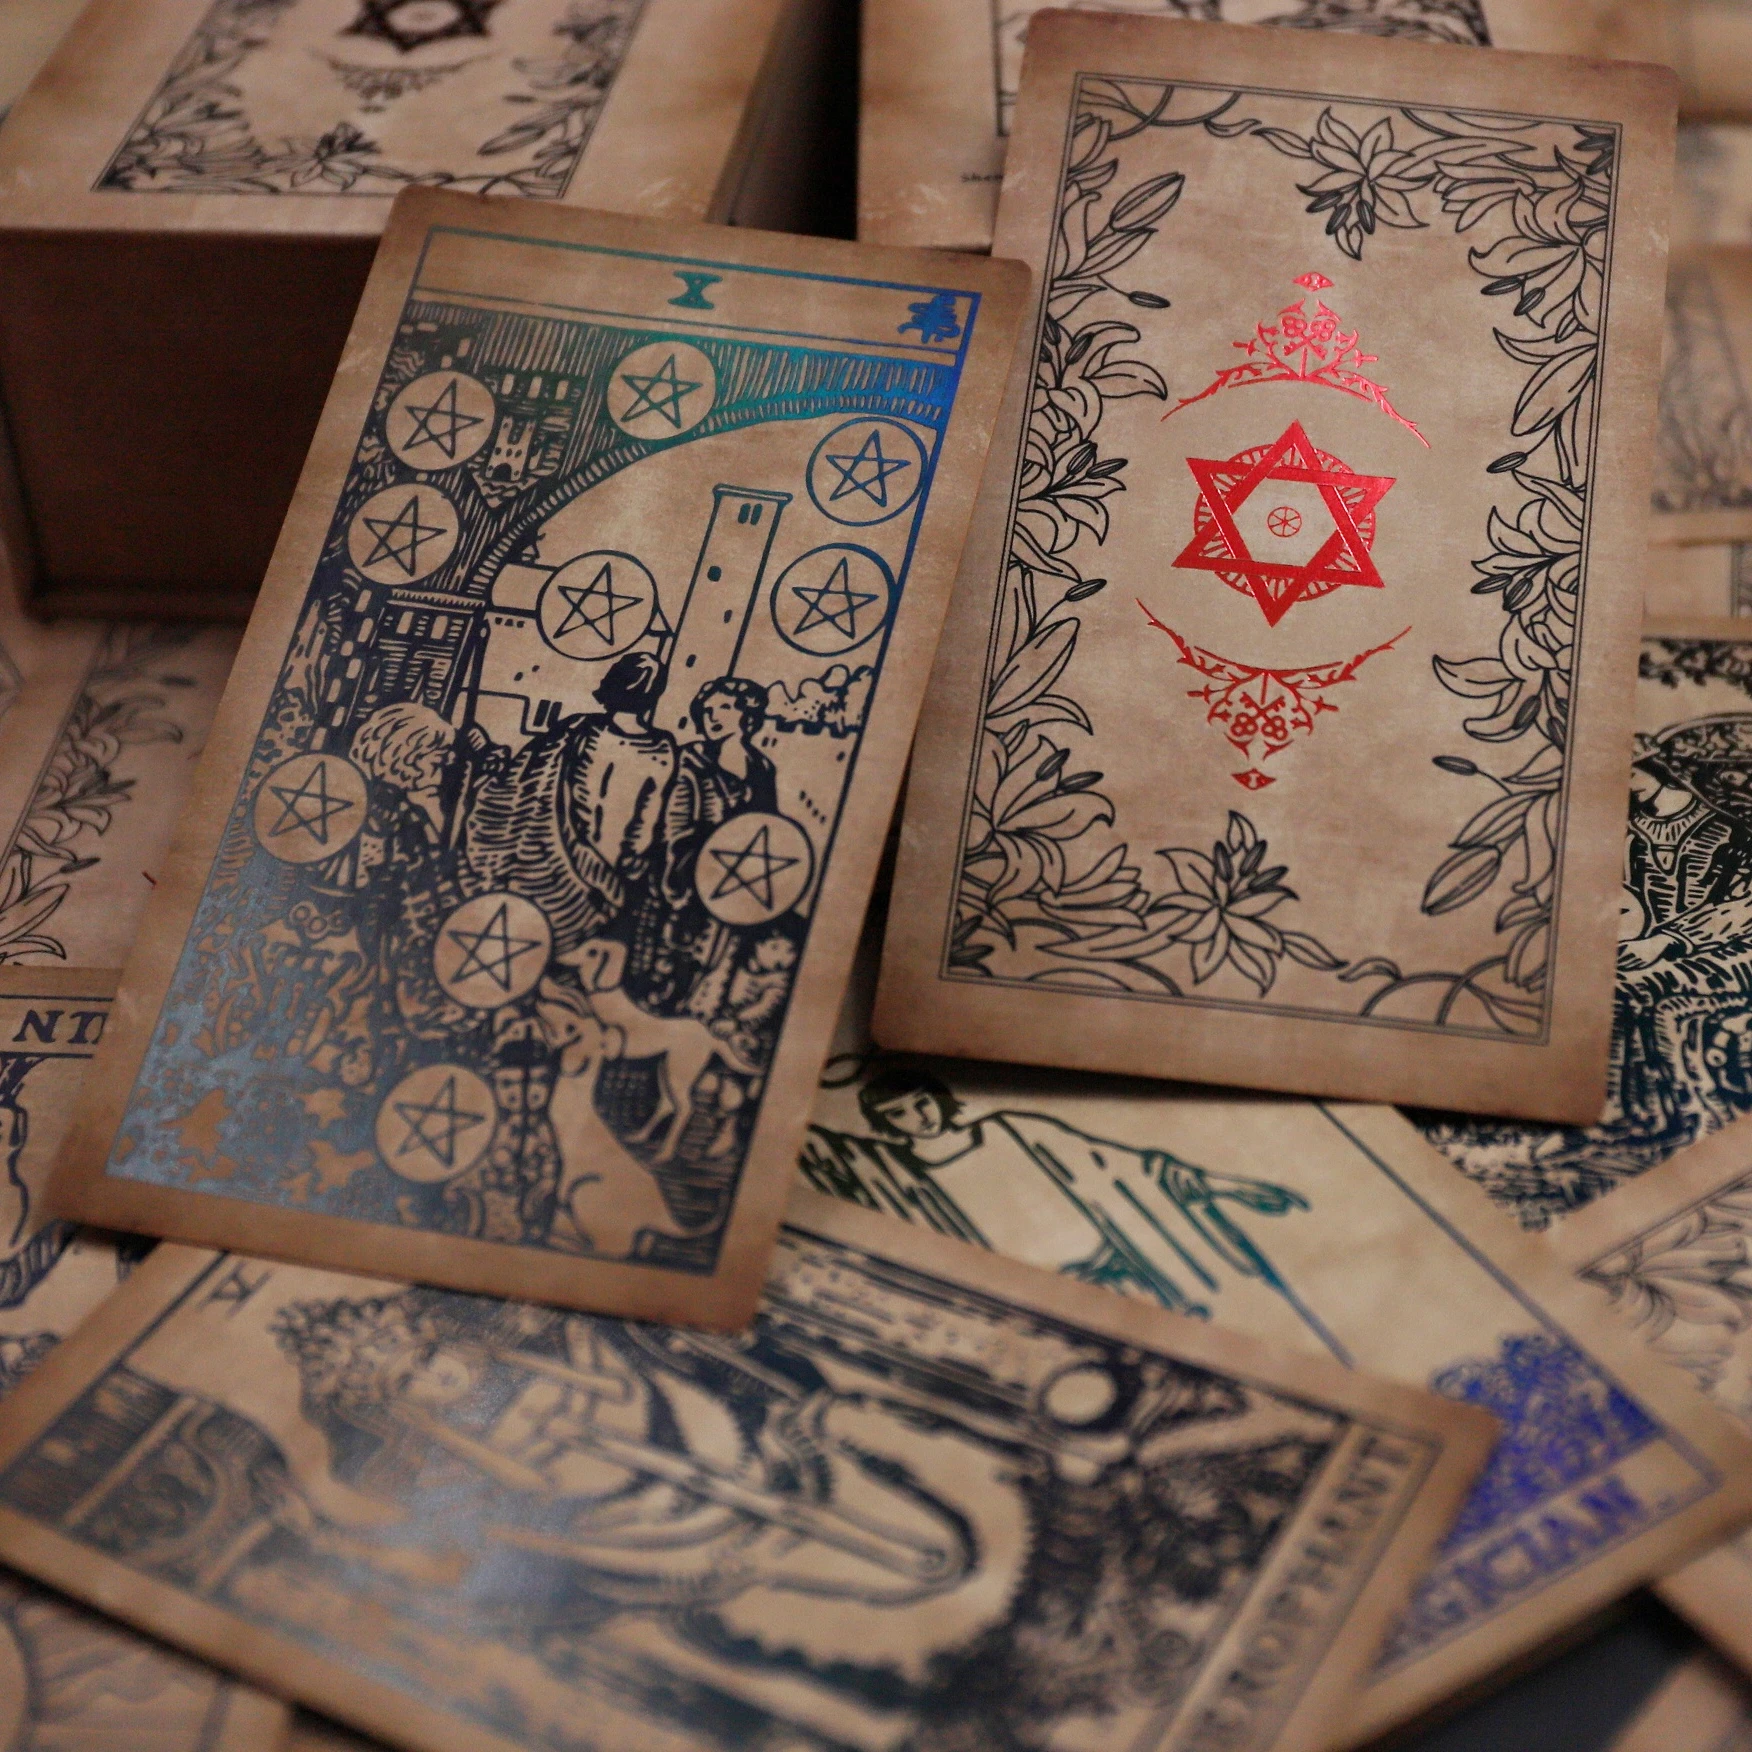 

Original Tarot Cards Spiritual Cards The Neo Rider Tarot Collection Small Wholesale